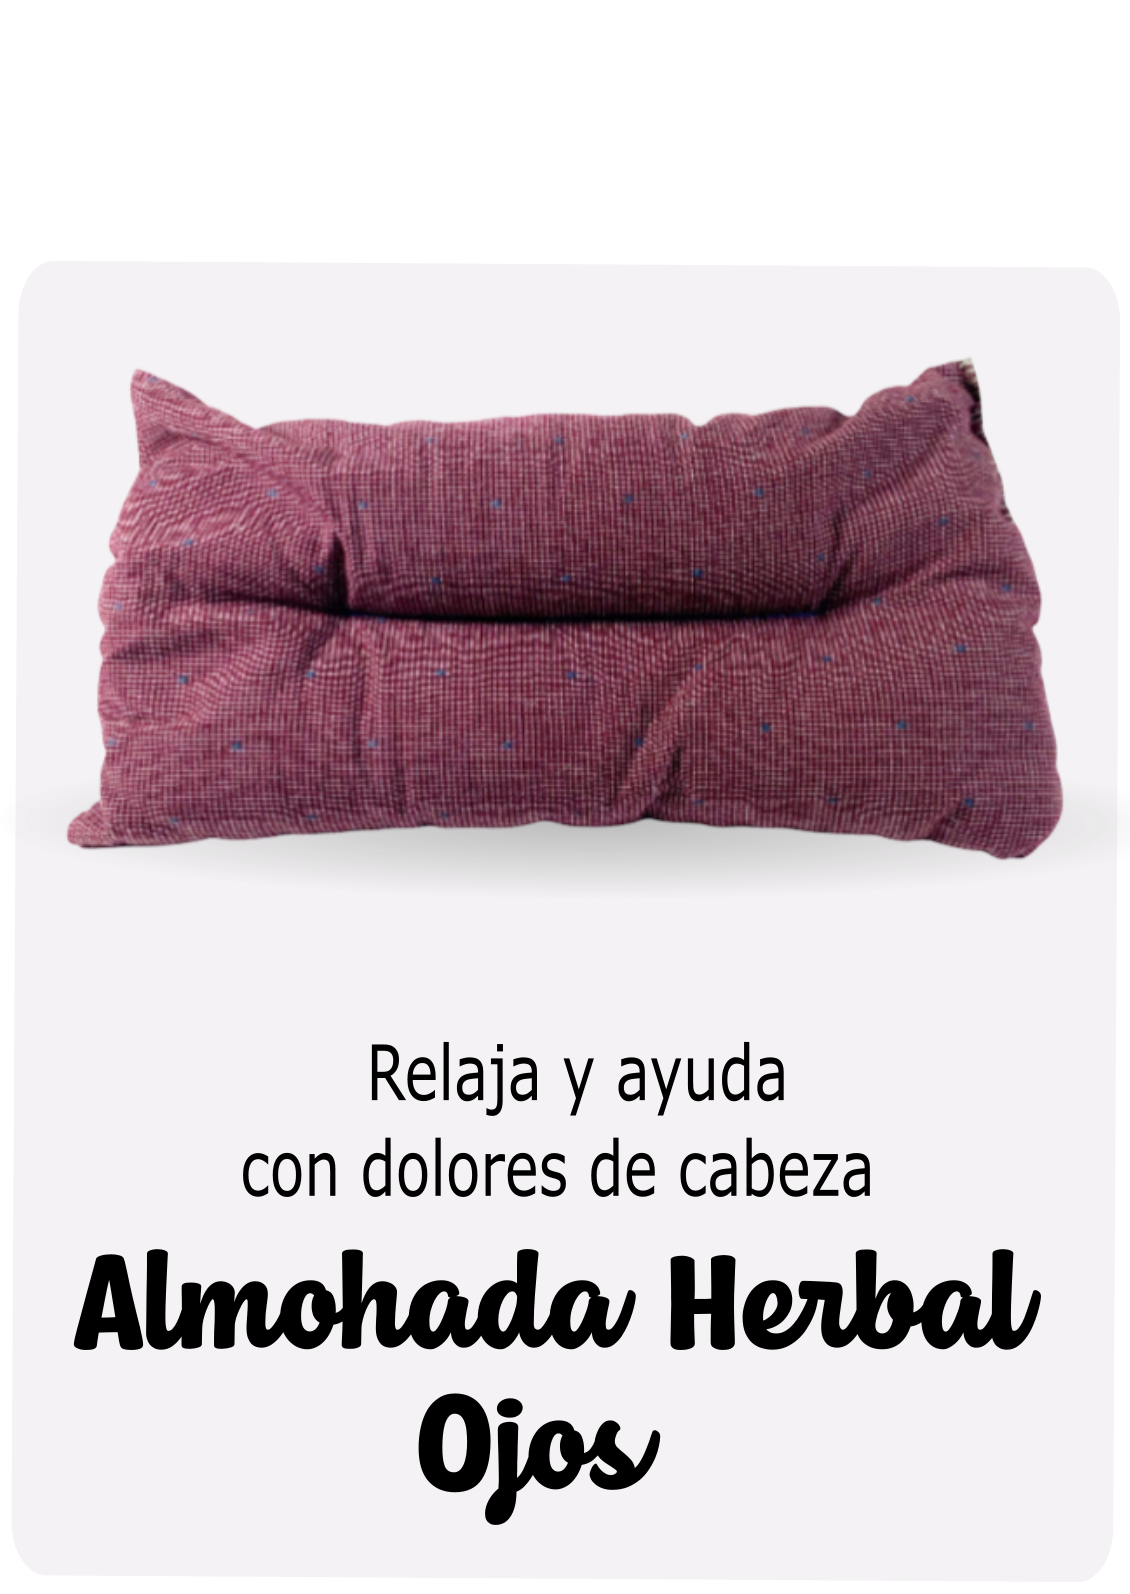 Almohada Herbal